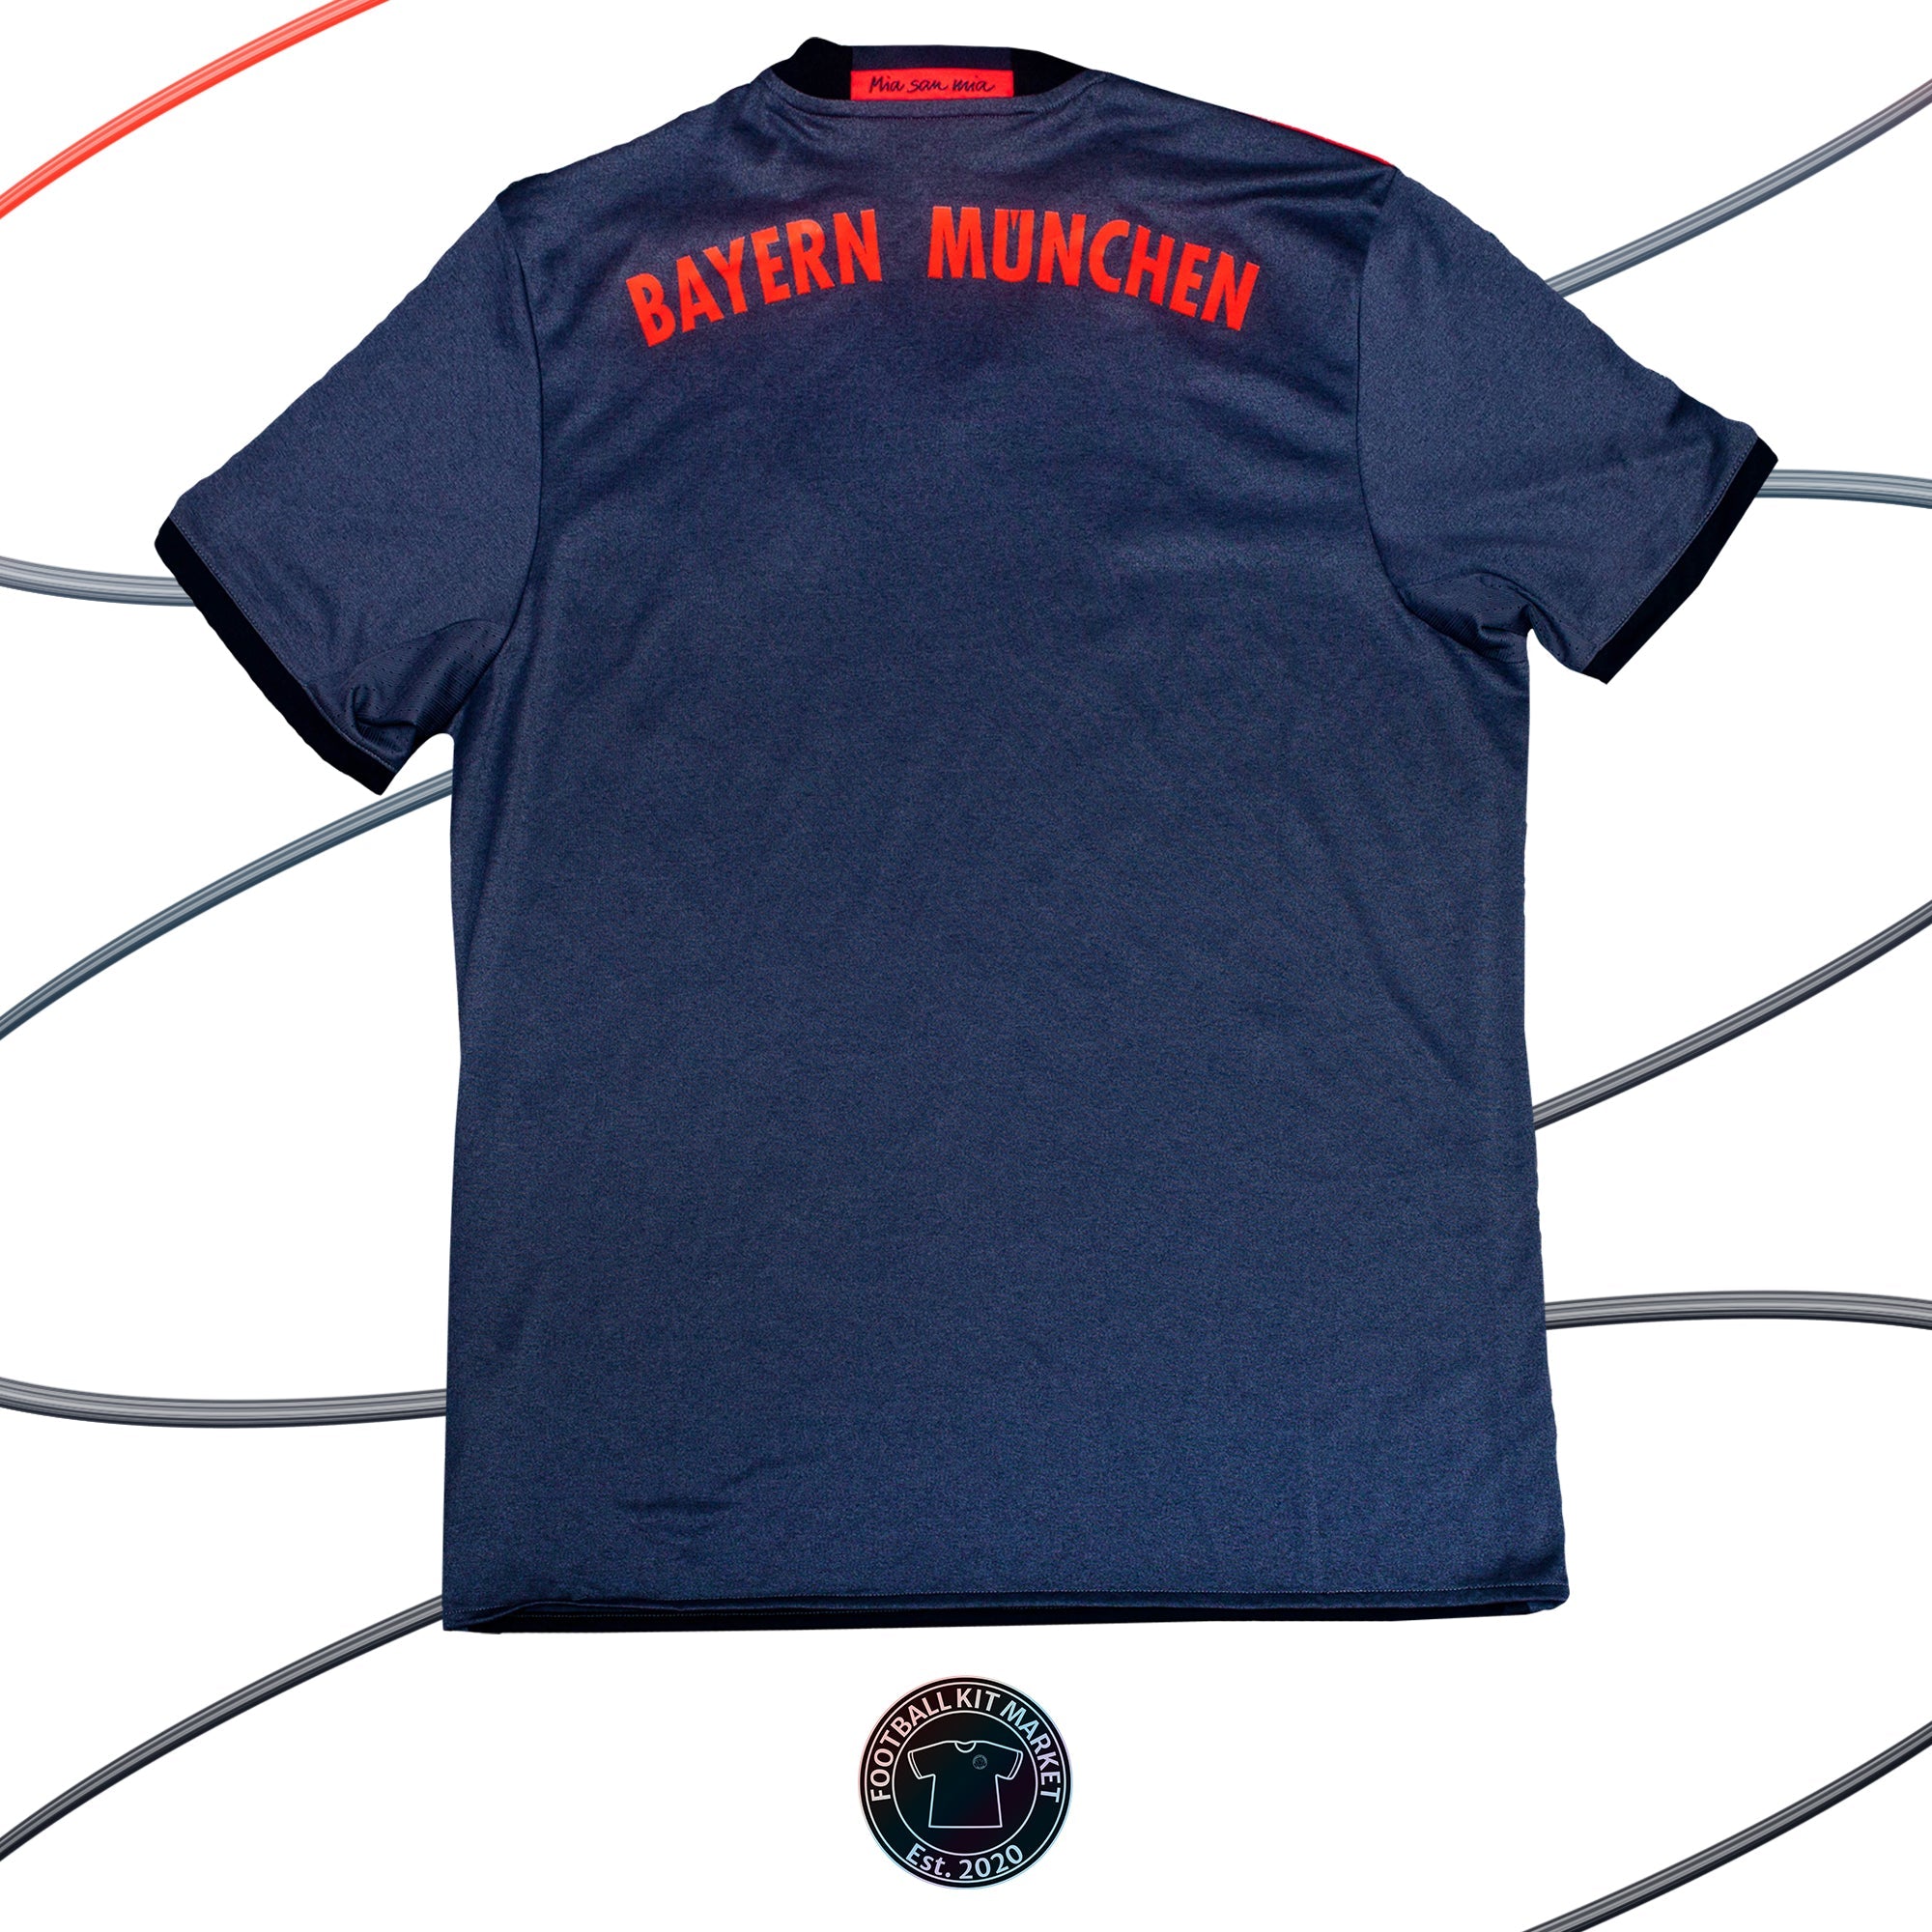 Genuine BAYERN MUNICH Away Shirt (2016-2017) - ADIDAS (XL) - Product Image from Football Kit Market